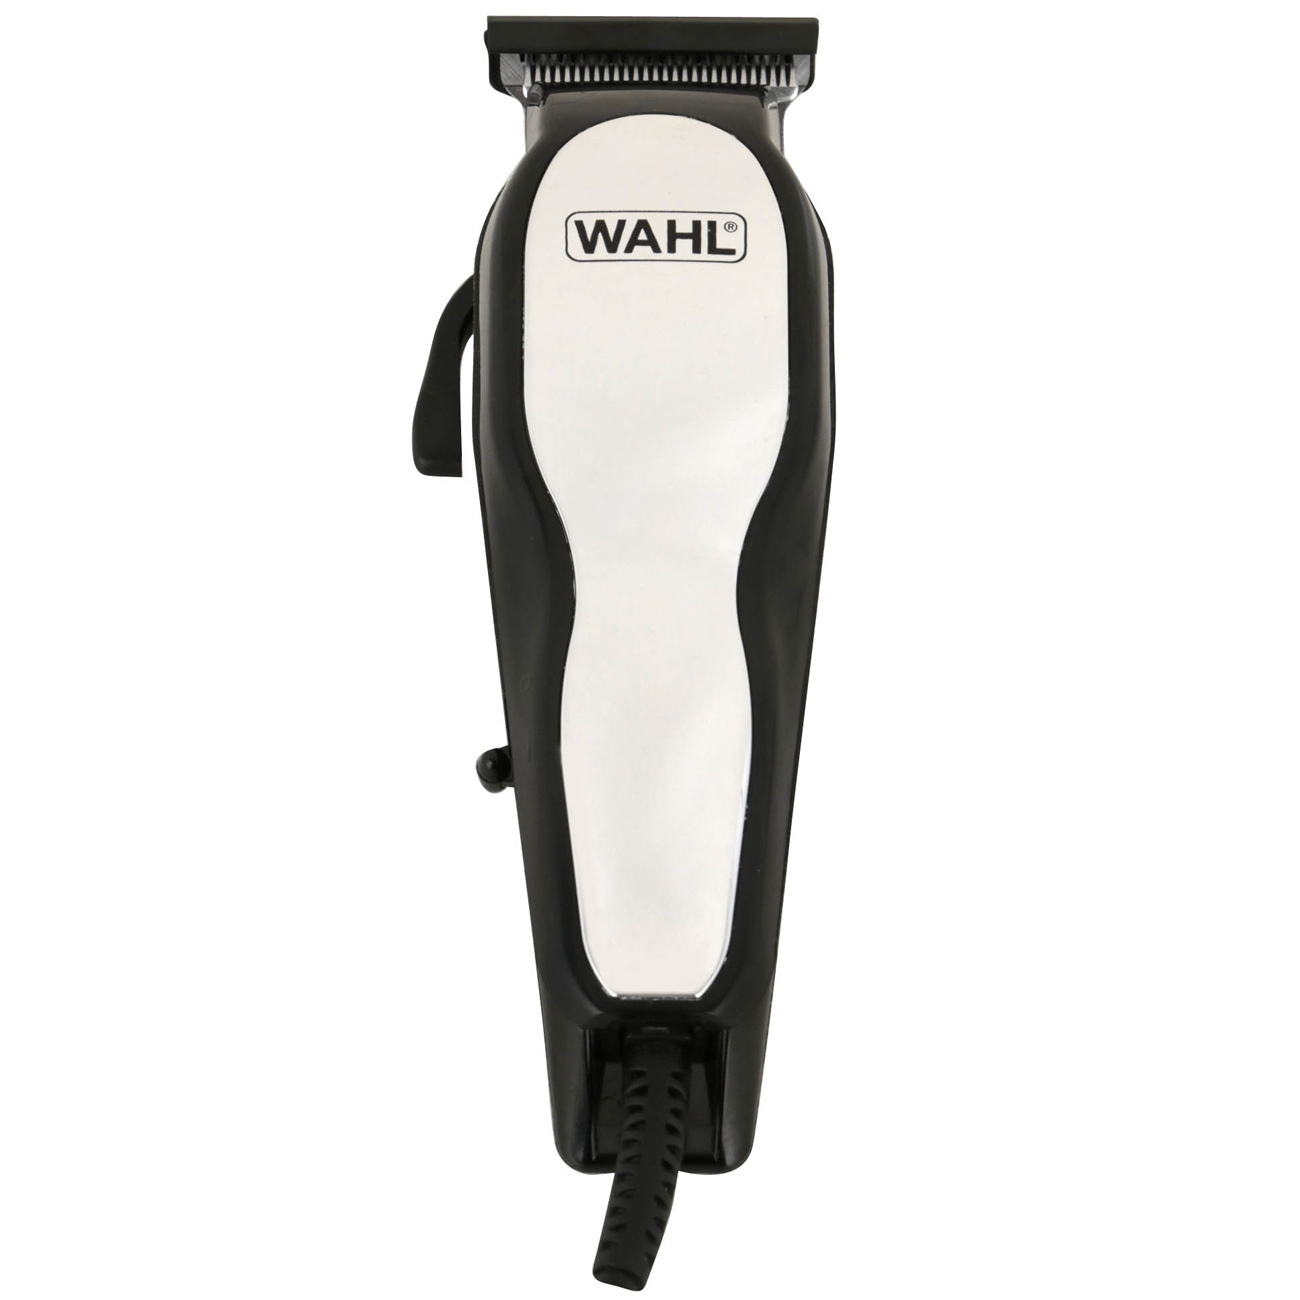 Машинка для стрижки волос wahl купить. Машинка для стрижки волос Wahl 79111-516. Машинка для стрижки Wahl 8470-500. Wahl 9698-1016. Машинка для стрижки Wahl Baldfader.